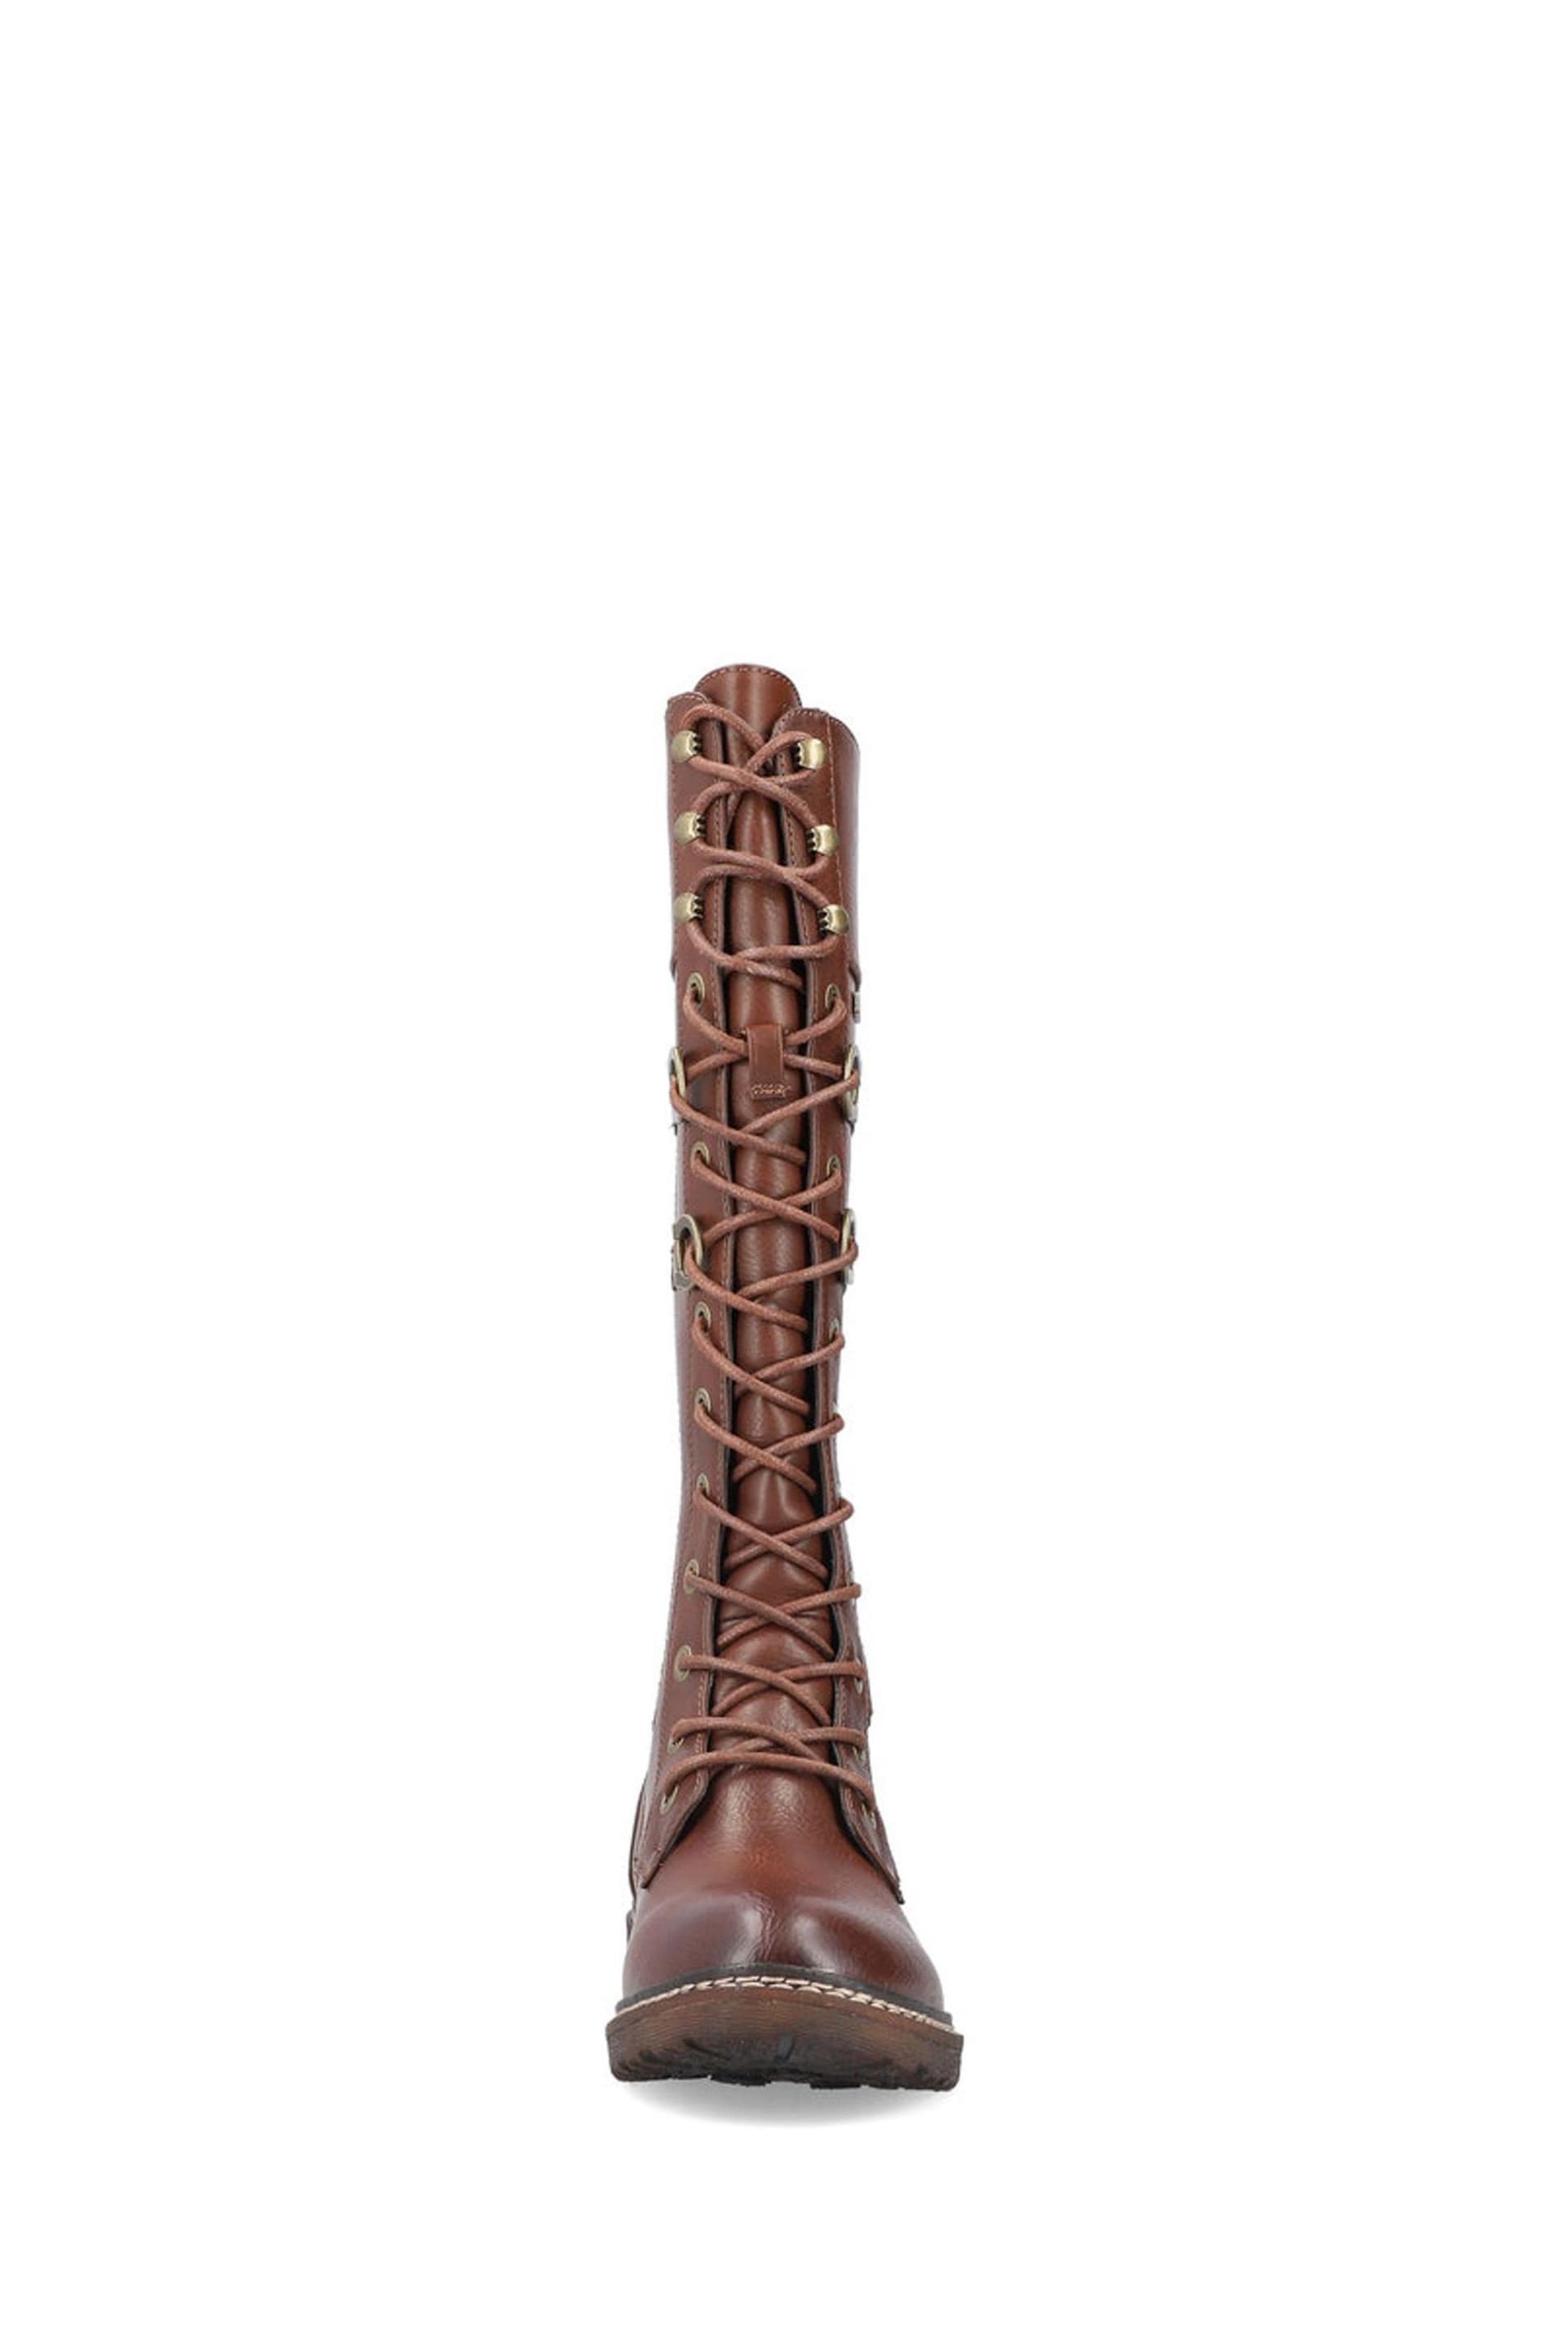 Rieker Womens Zipper Brown Boots - Image 5 of 8